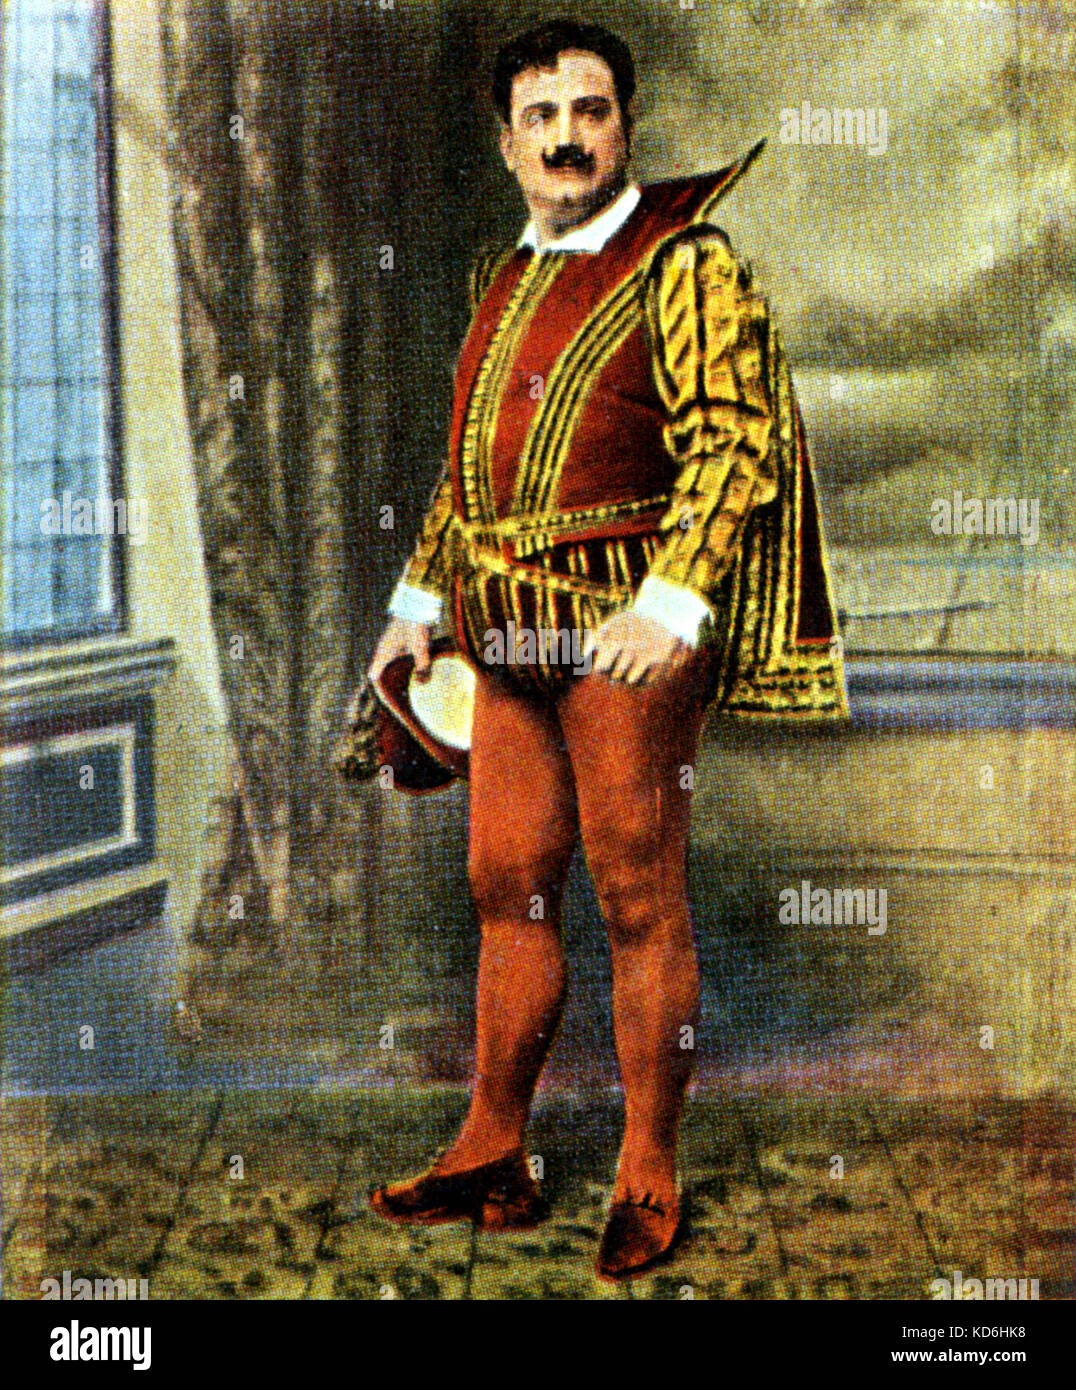 Enrico Caruso als Herzog in Verdis "Rigoletto". Eckstein Karte, nach einem Foto. Italienische Tenor, 1873-1921. Stockfoto